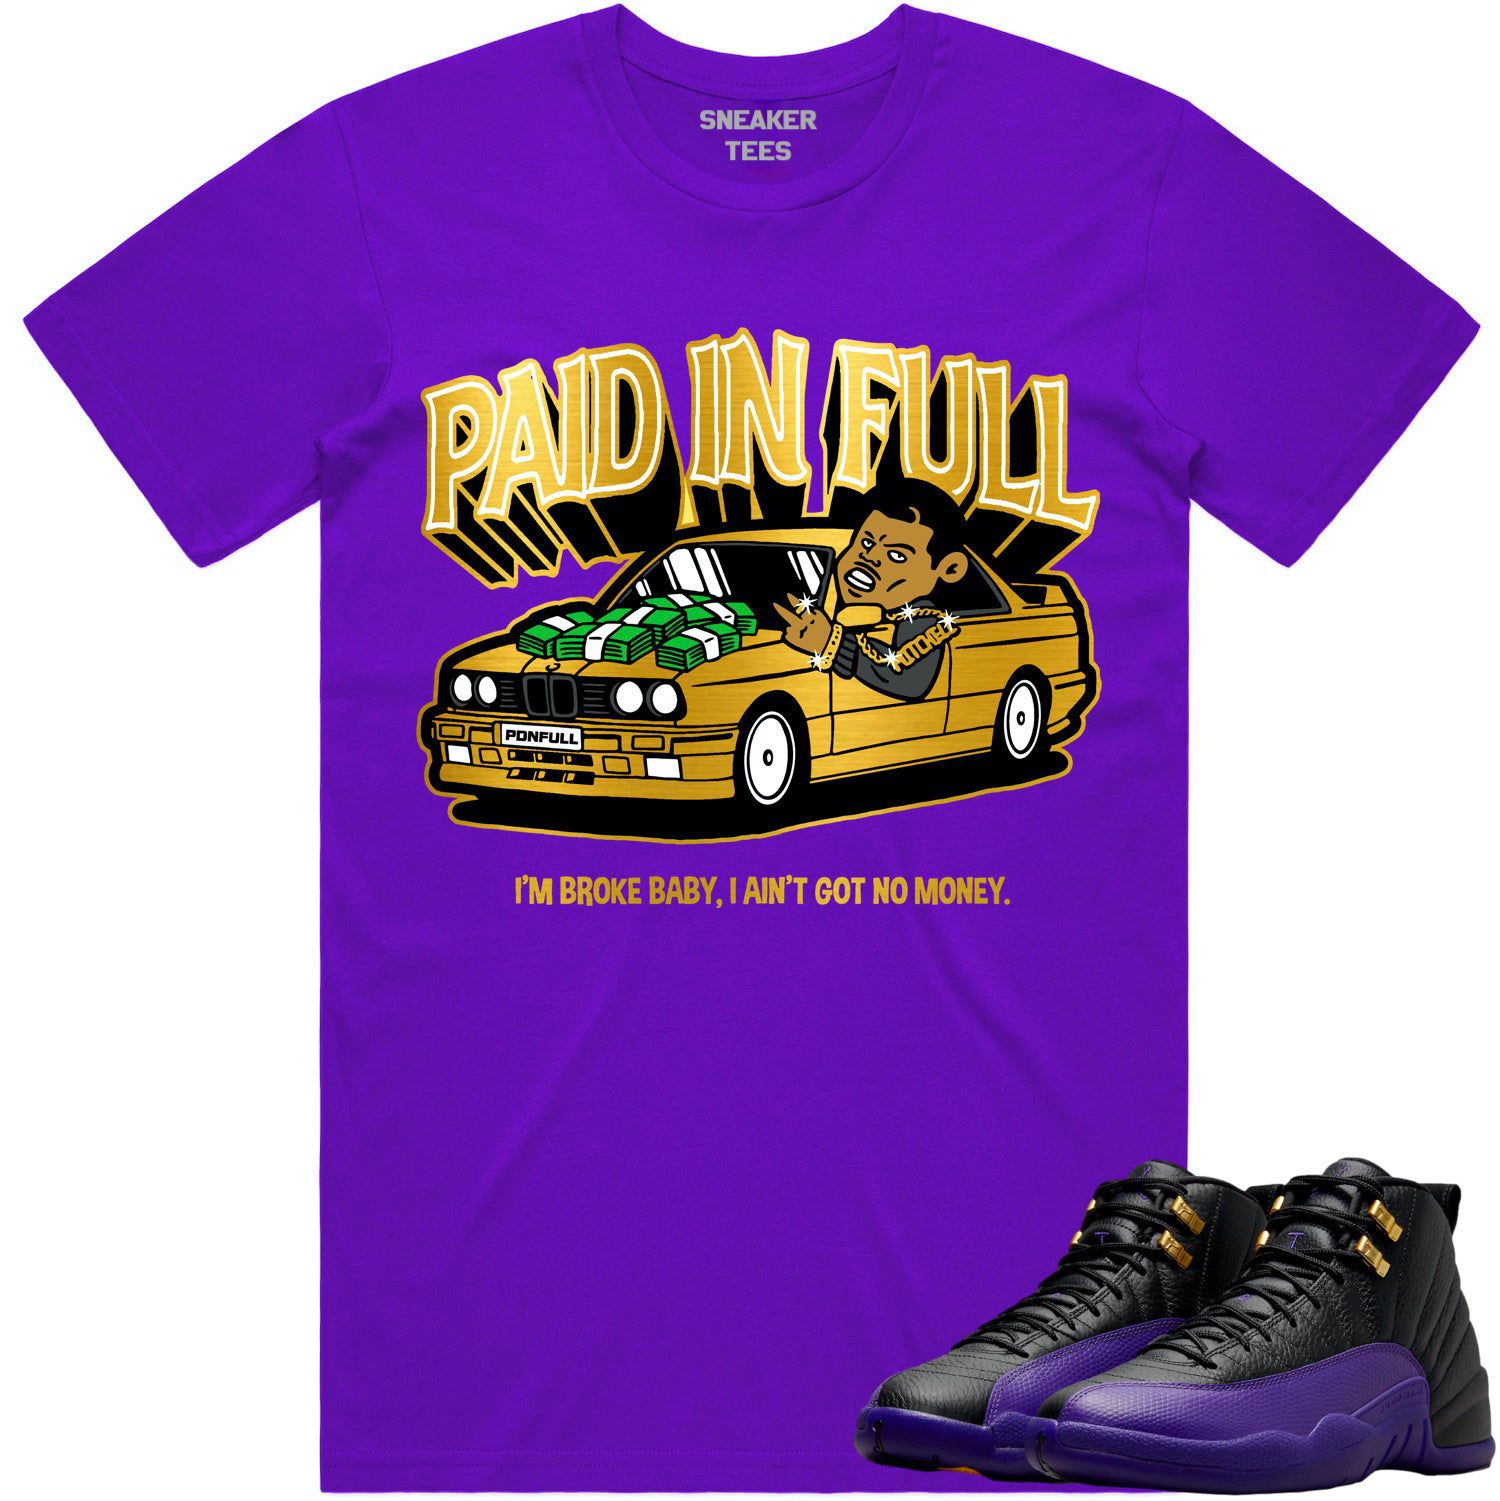 Field Purple 12s Shirt - Jordan 12 Field Purple Shirts - Paid